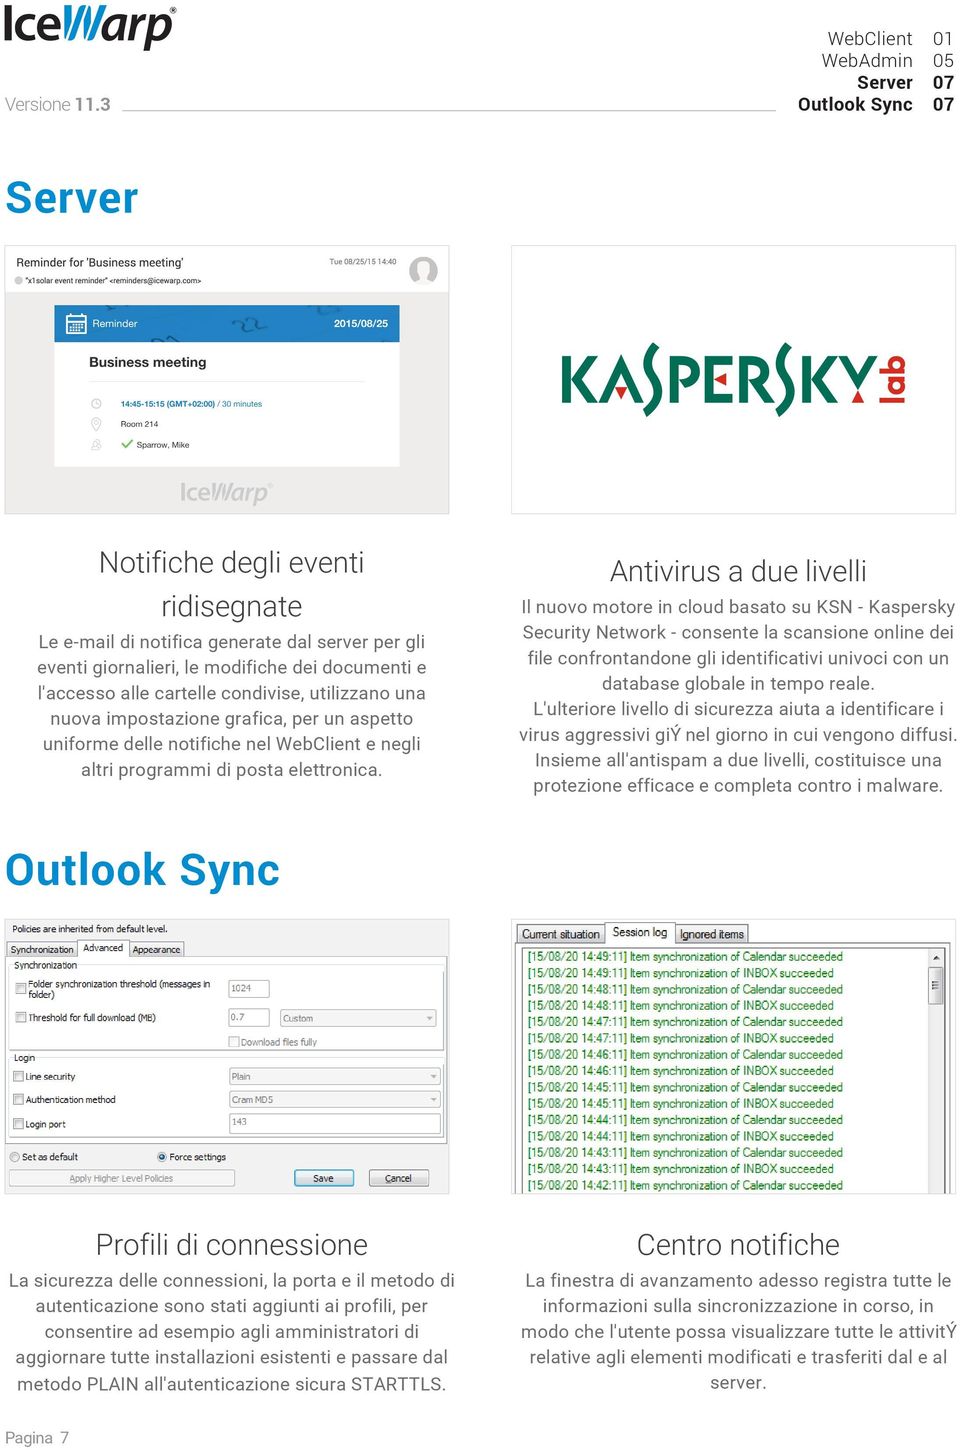 Antivirus a due livelli Il nuovo motore in cloud basato su KSN - Kaspersky Security Network - consente la scansione online dei file confrontandone gli identificativi univoci con un database globale